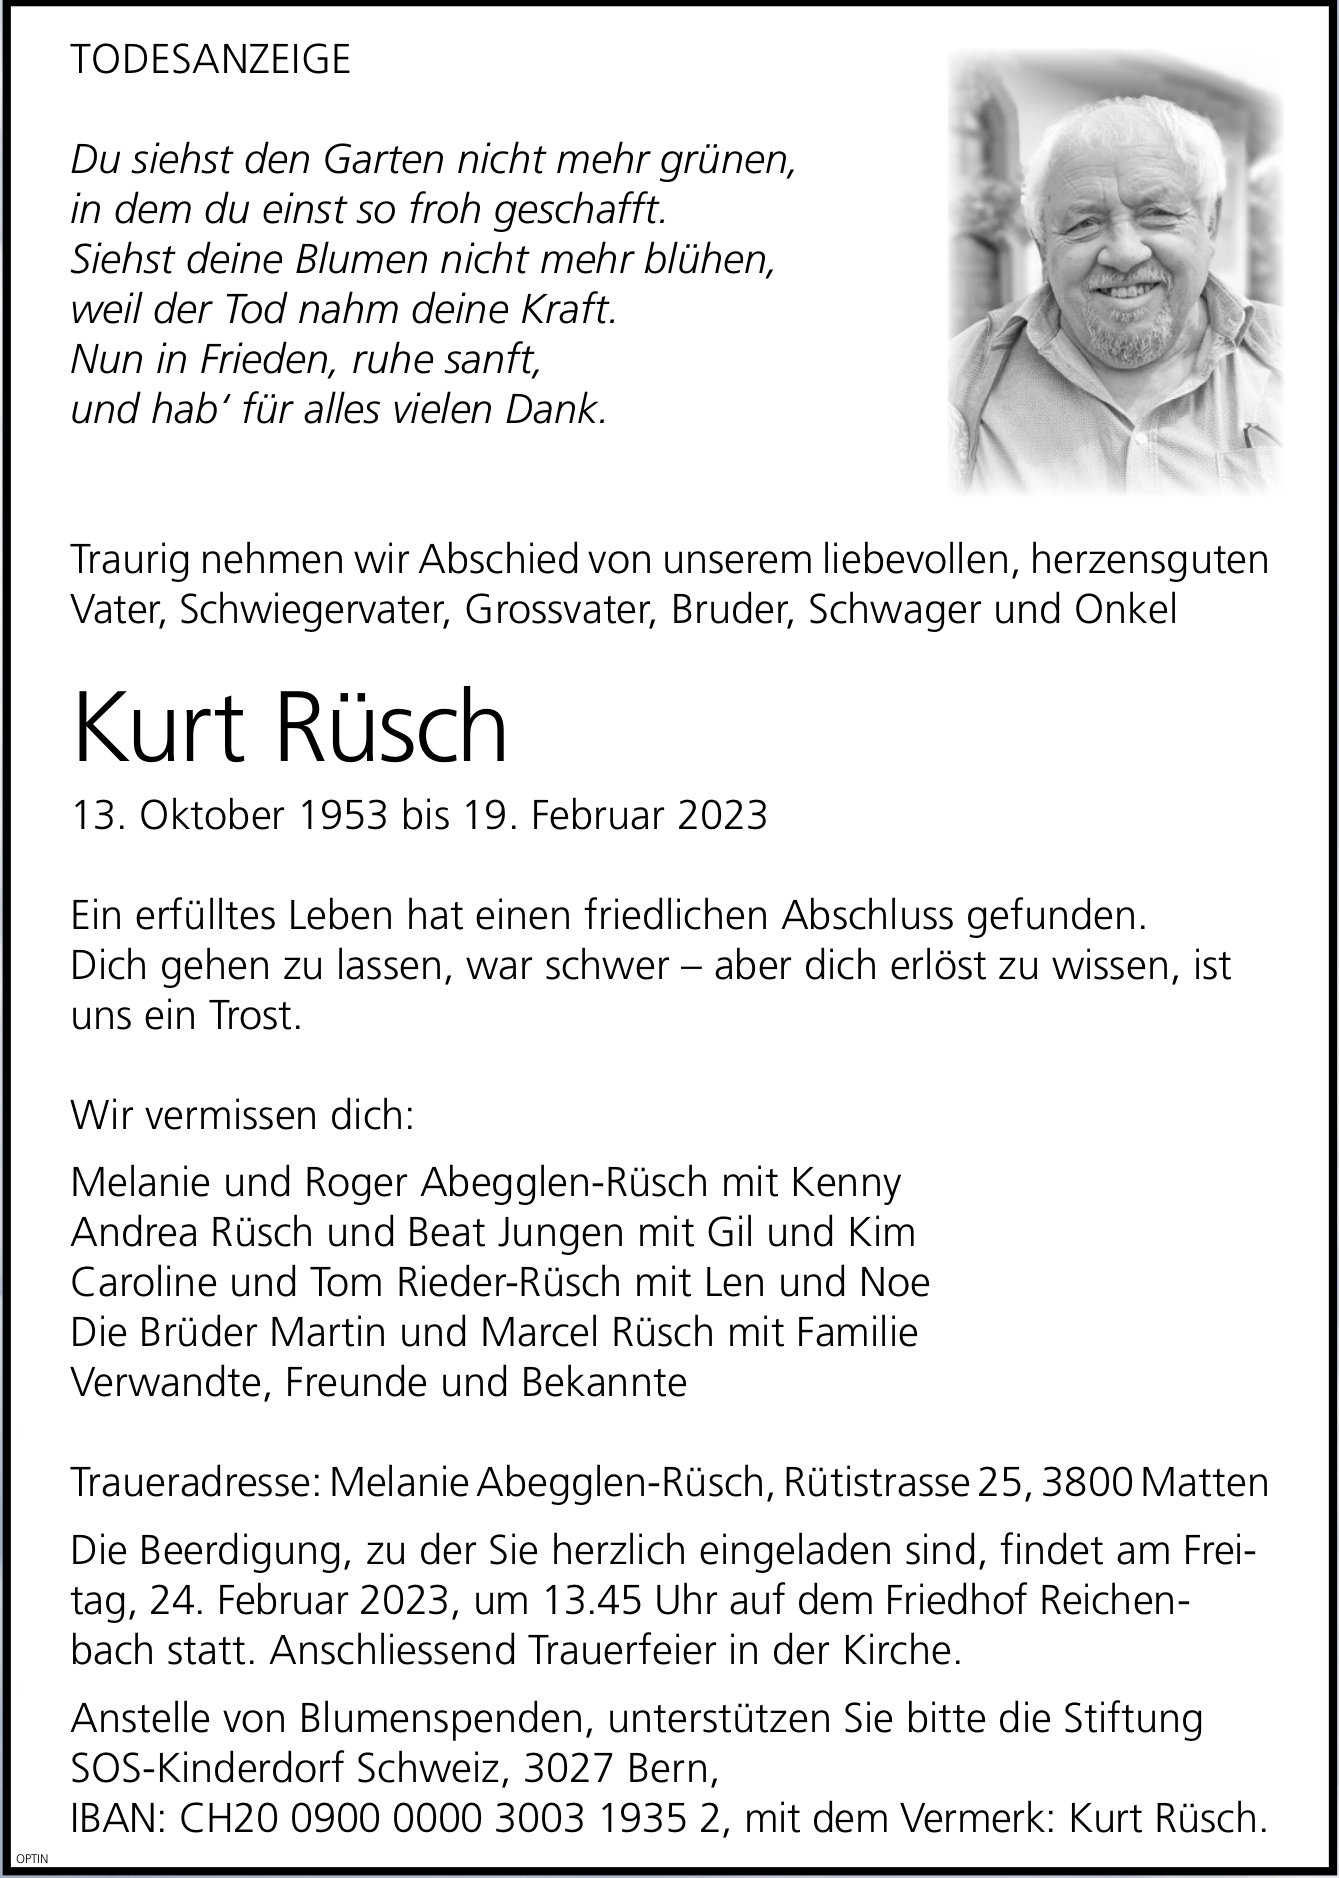 Kurt Rüsch, Februar 2023 / TA